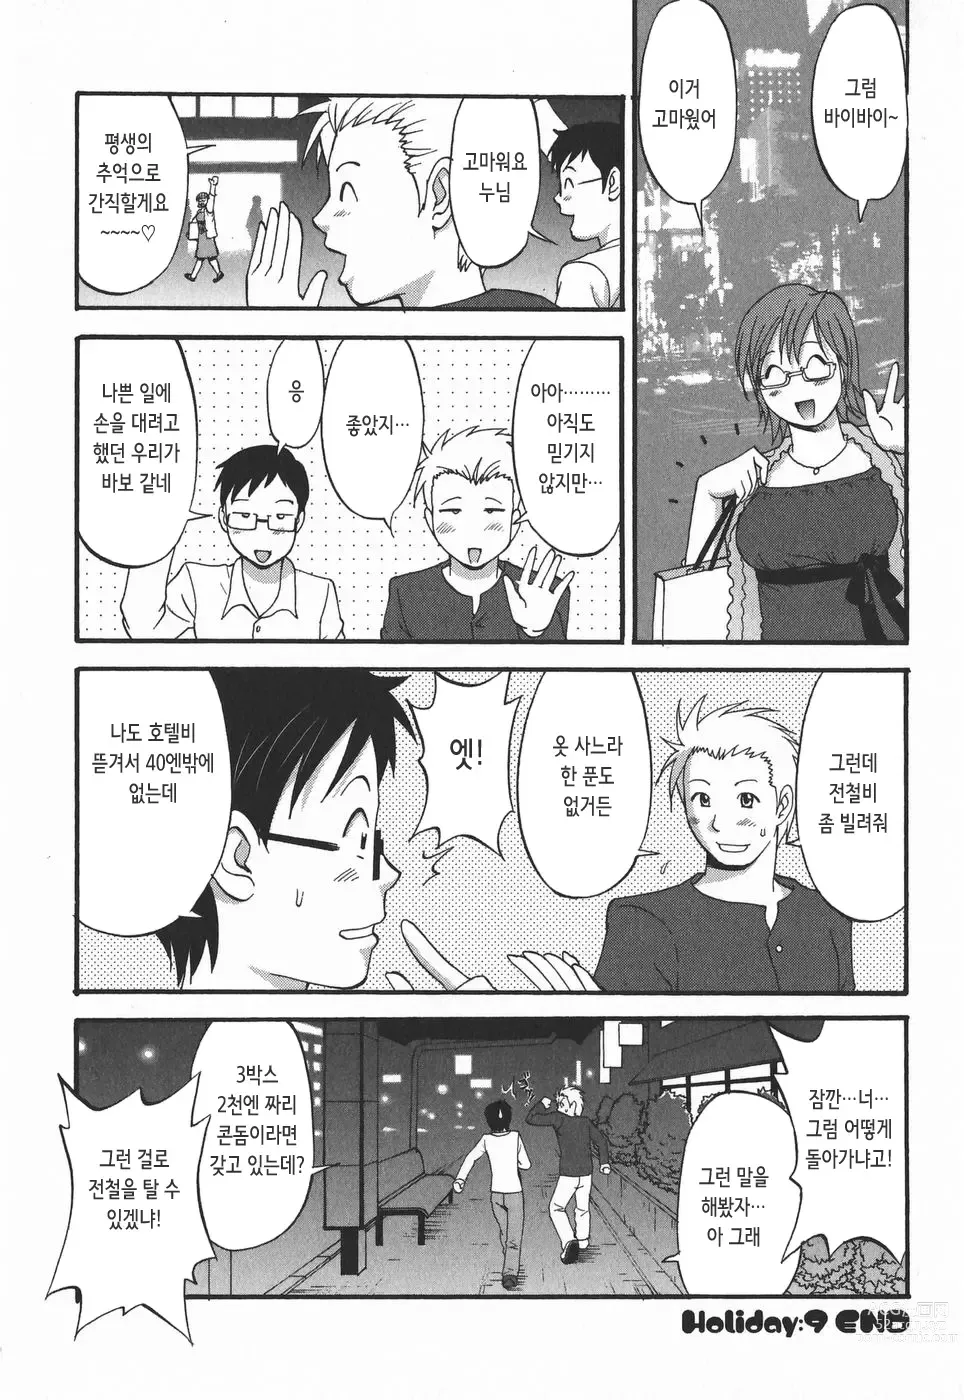 Page 191 of doujinshi 하나 씨의 휴일 2